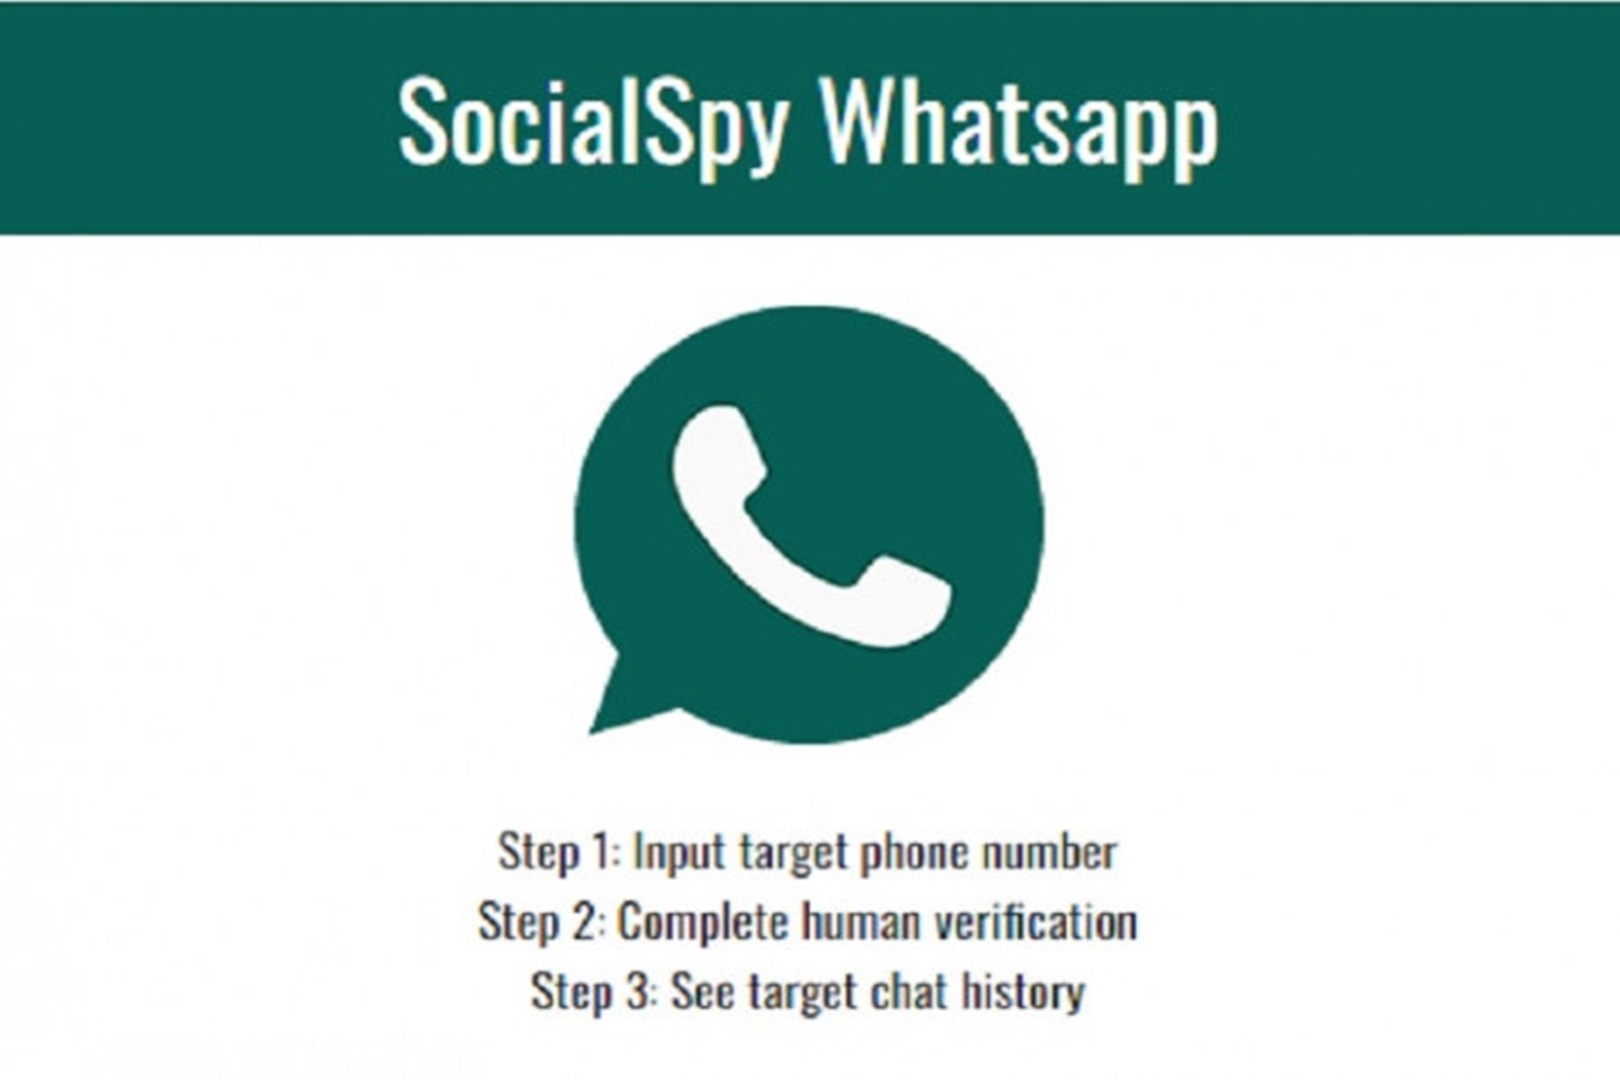 SocialSpy WhatsApp, Bongkar Rahasia Pacar Sampai Tuntas!